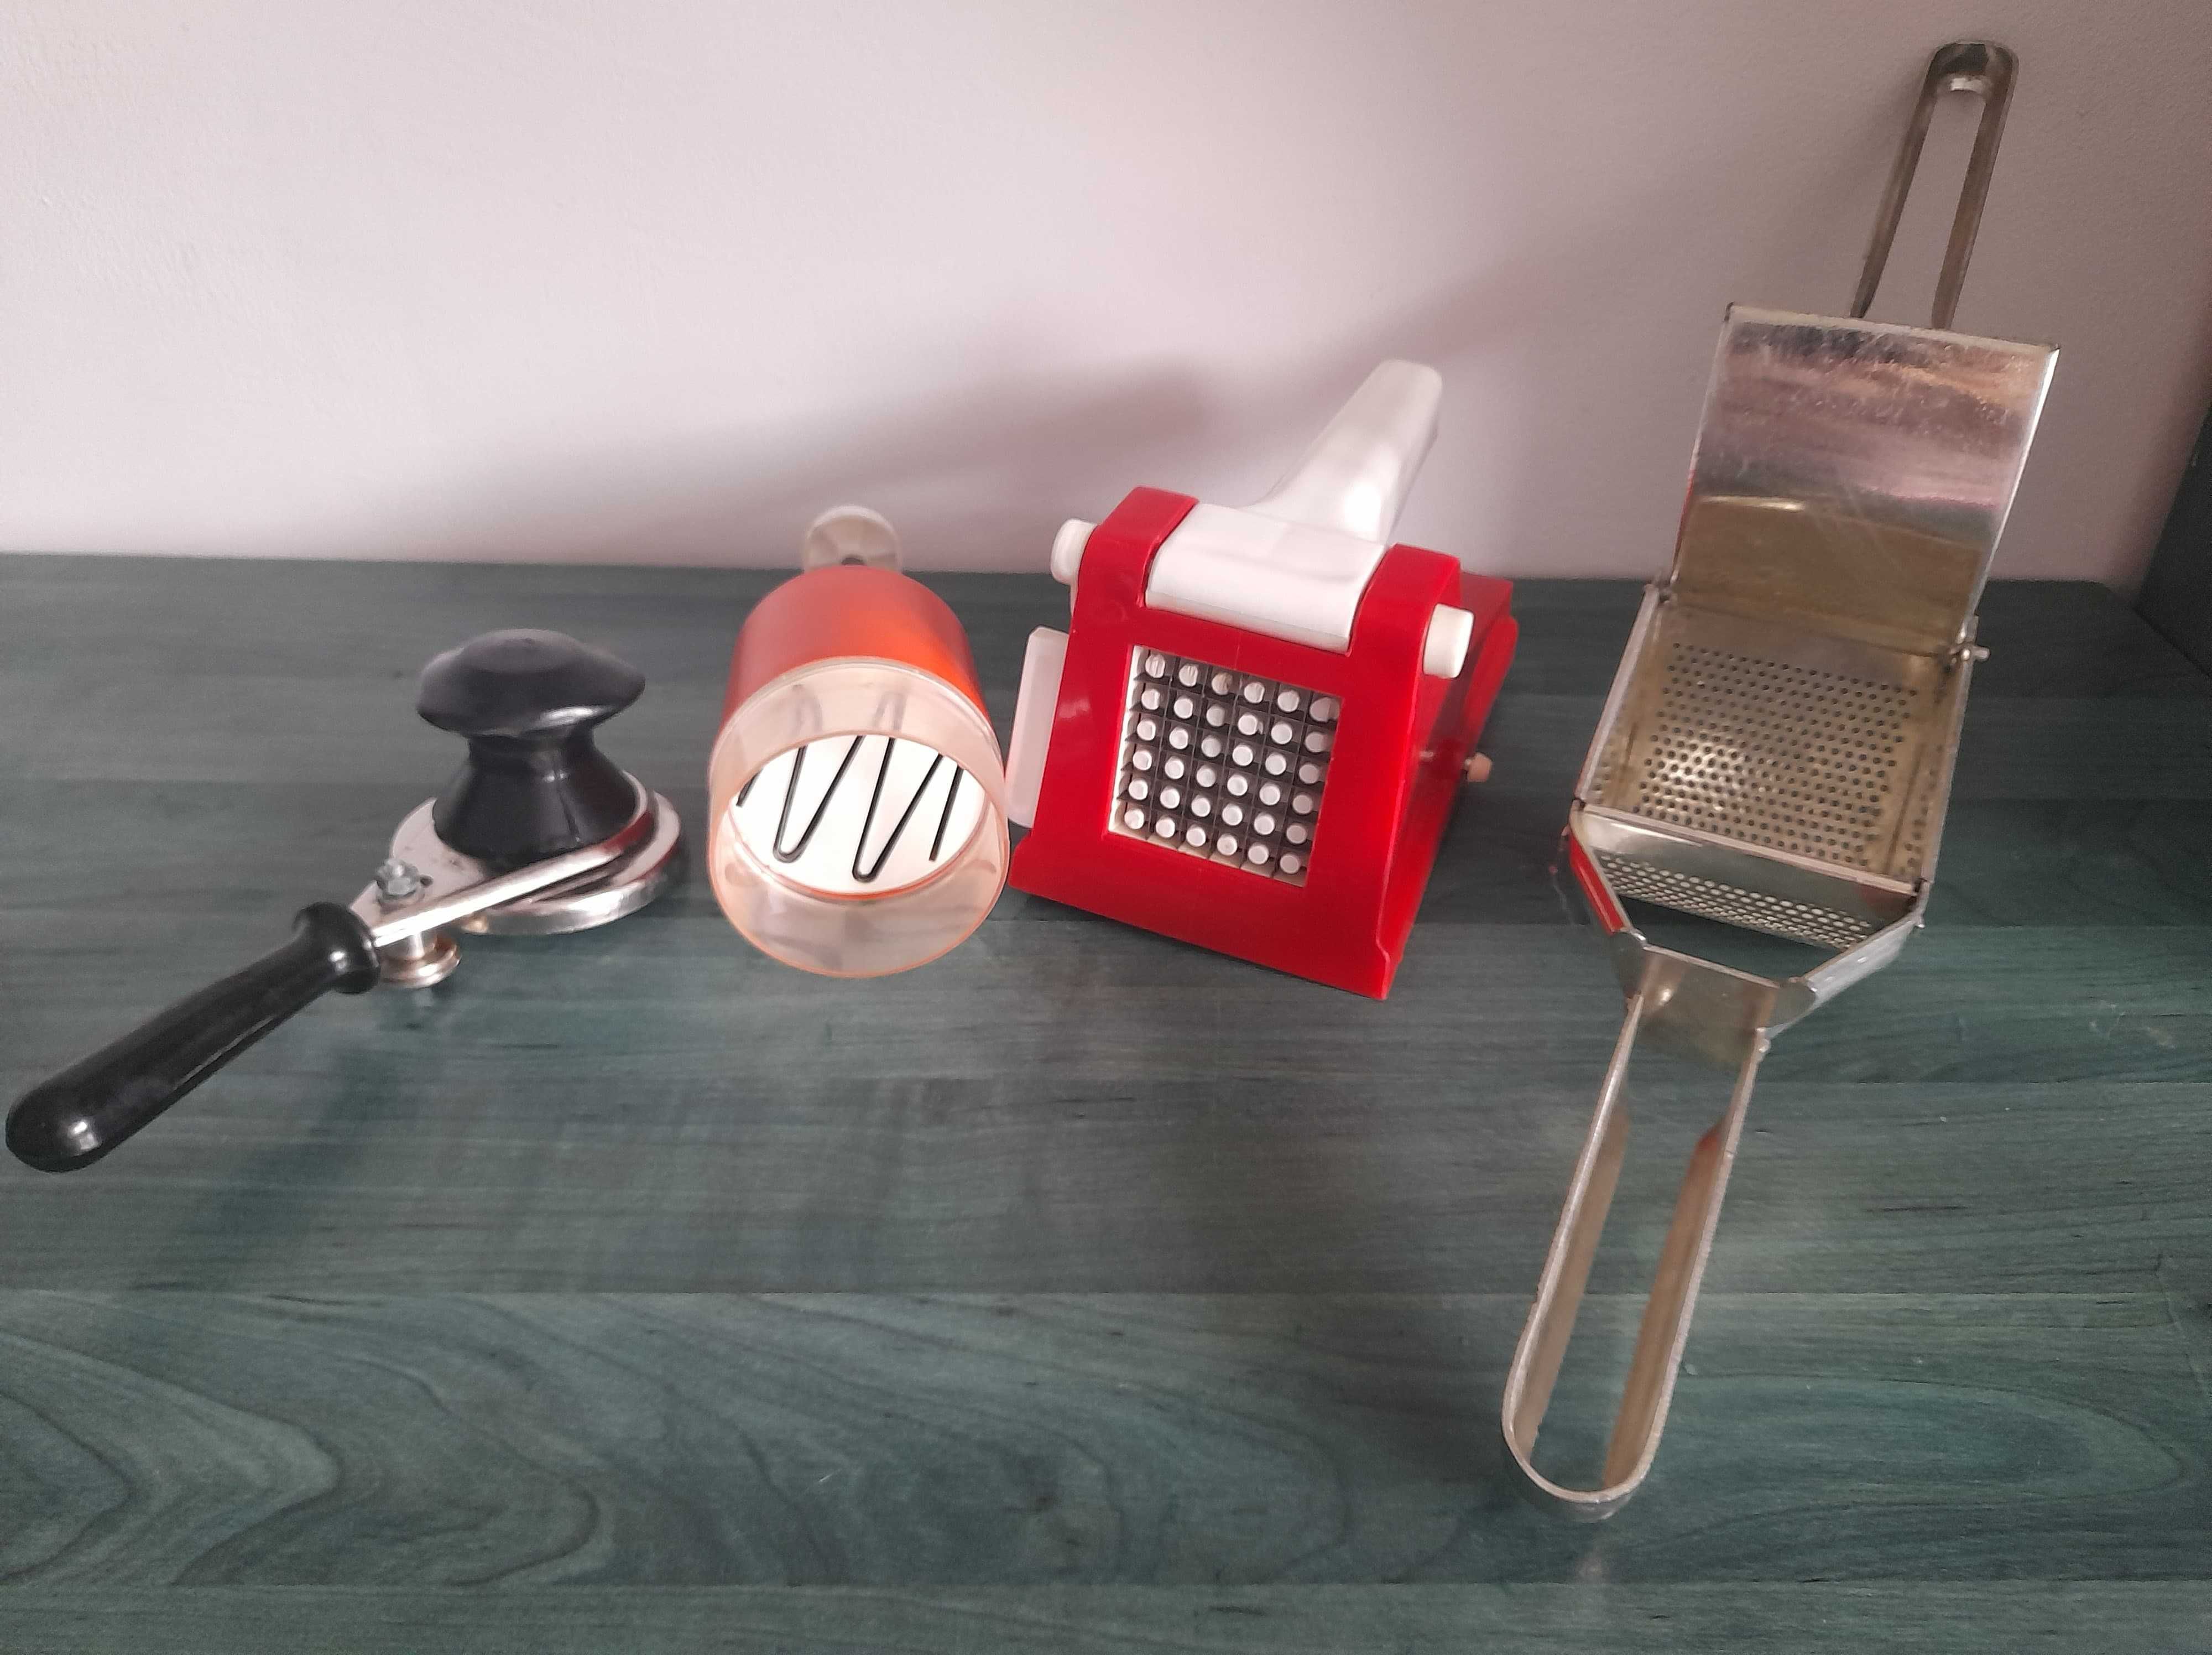 Obiecte  diferite uz casnic pentru bucatarie